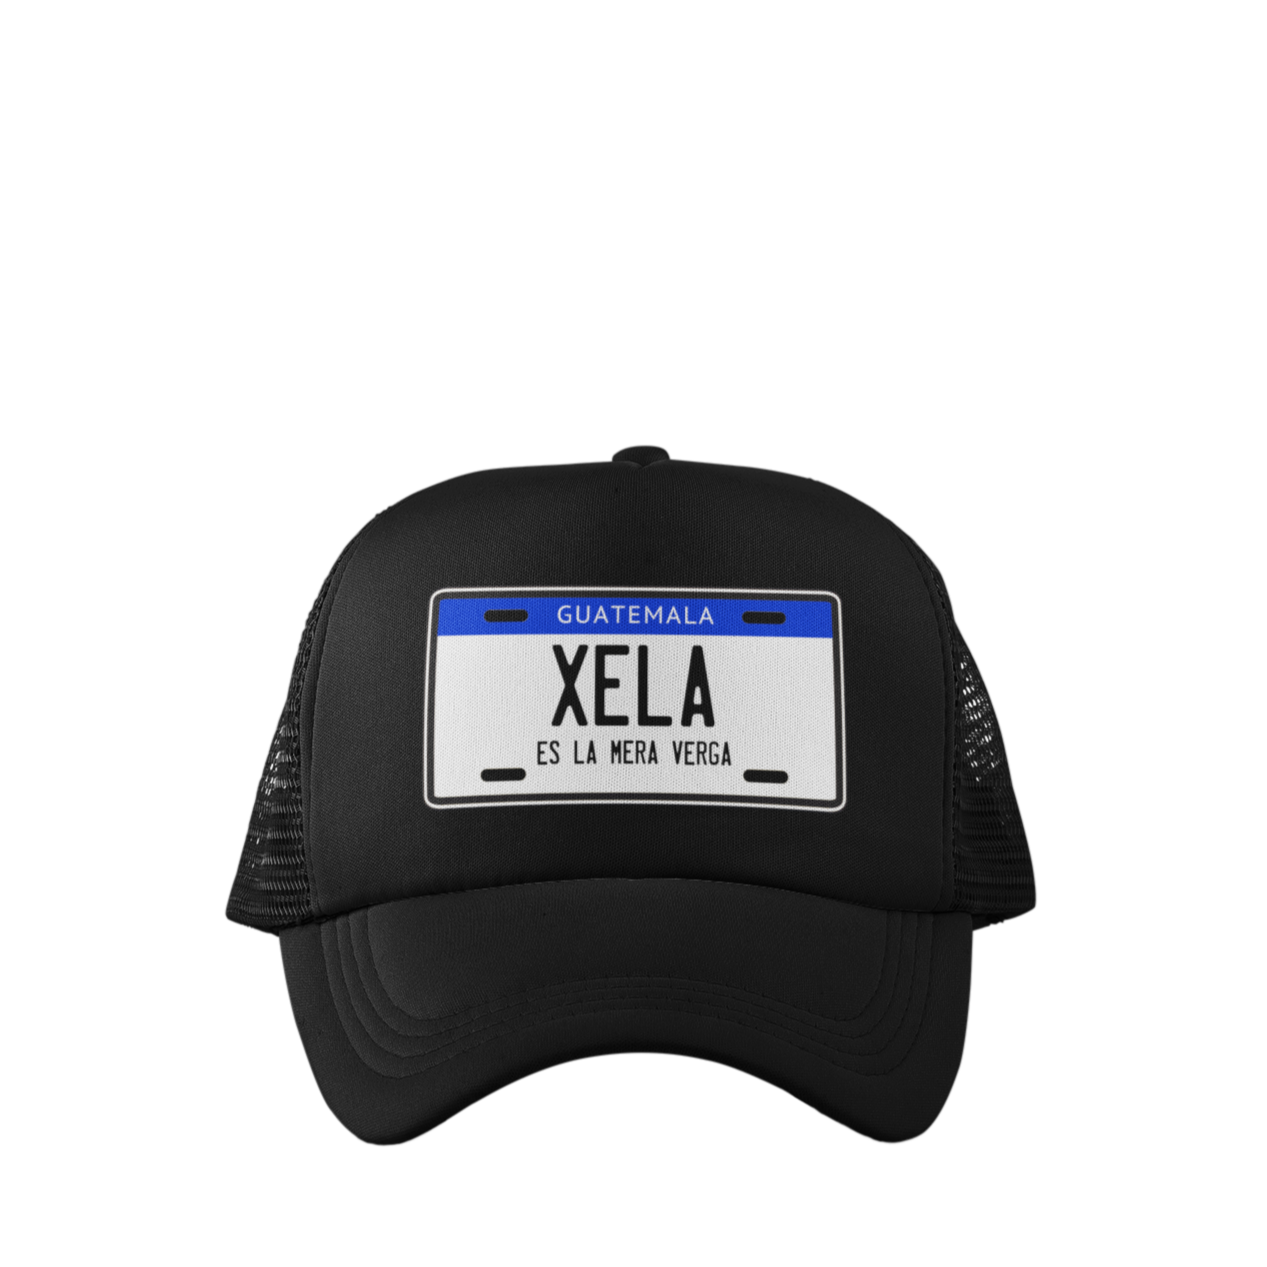 Descubre la exclusiva gorra tipo trucker de Xela, diseñada para amantes de la cultura urbana. Con ajuste personalizable para mayor comodidad